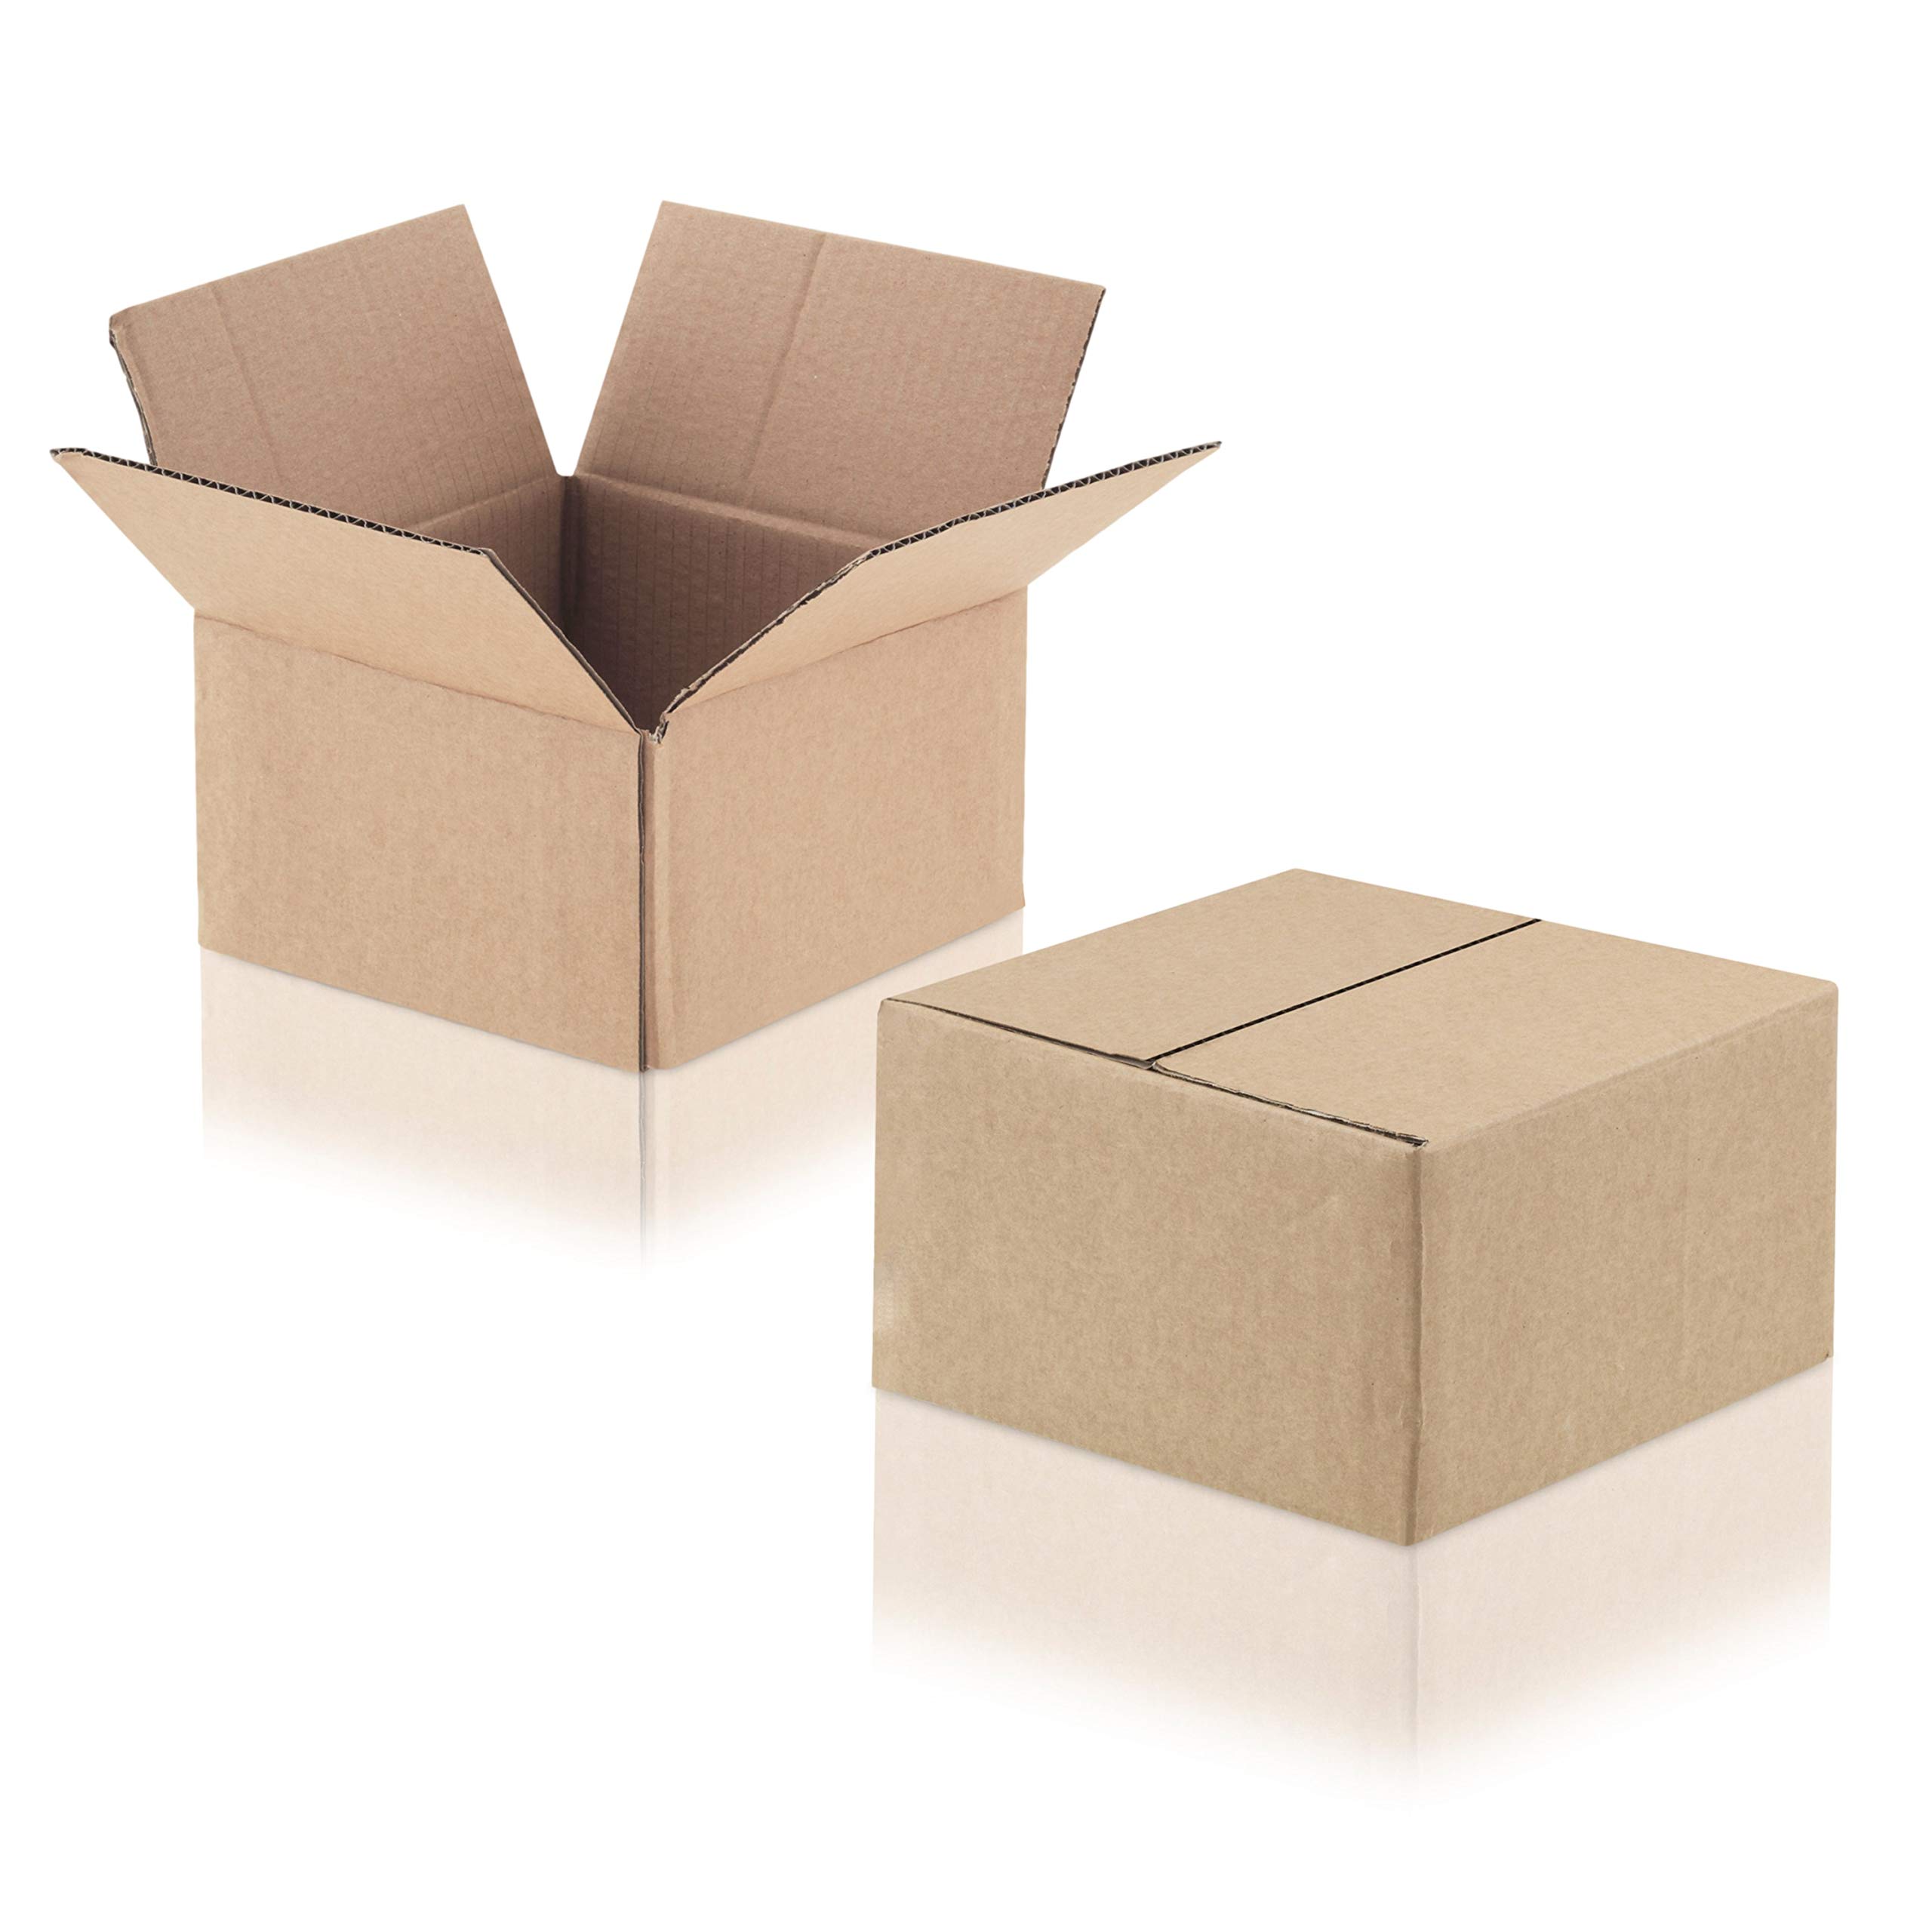 WPTrading - 50 Stück Versandkarton 1-wellig 200 x 200 x 100 mm aus Wellpappe (Nr. 13A) Braun - Pappe Faltkarton für Warenversendung, Paket & Päckchen klein (S) - Karton Versandverpackung extra stabil